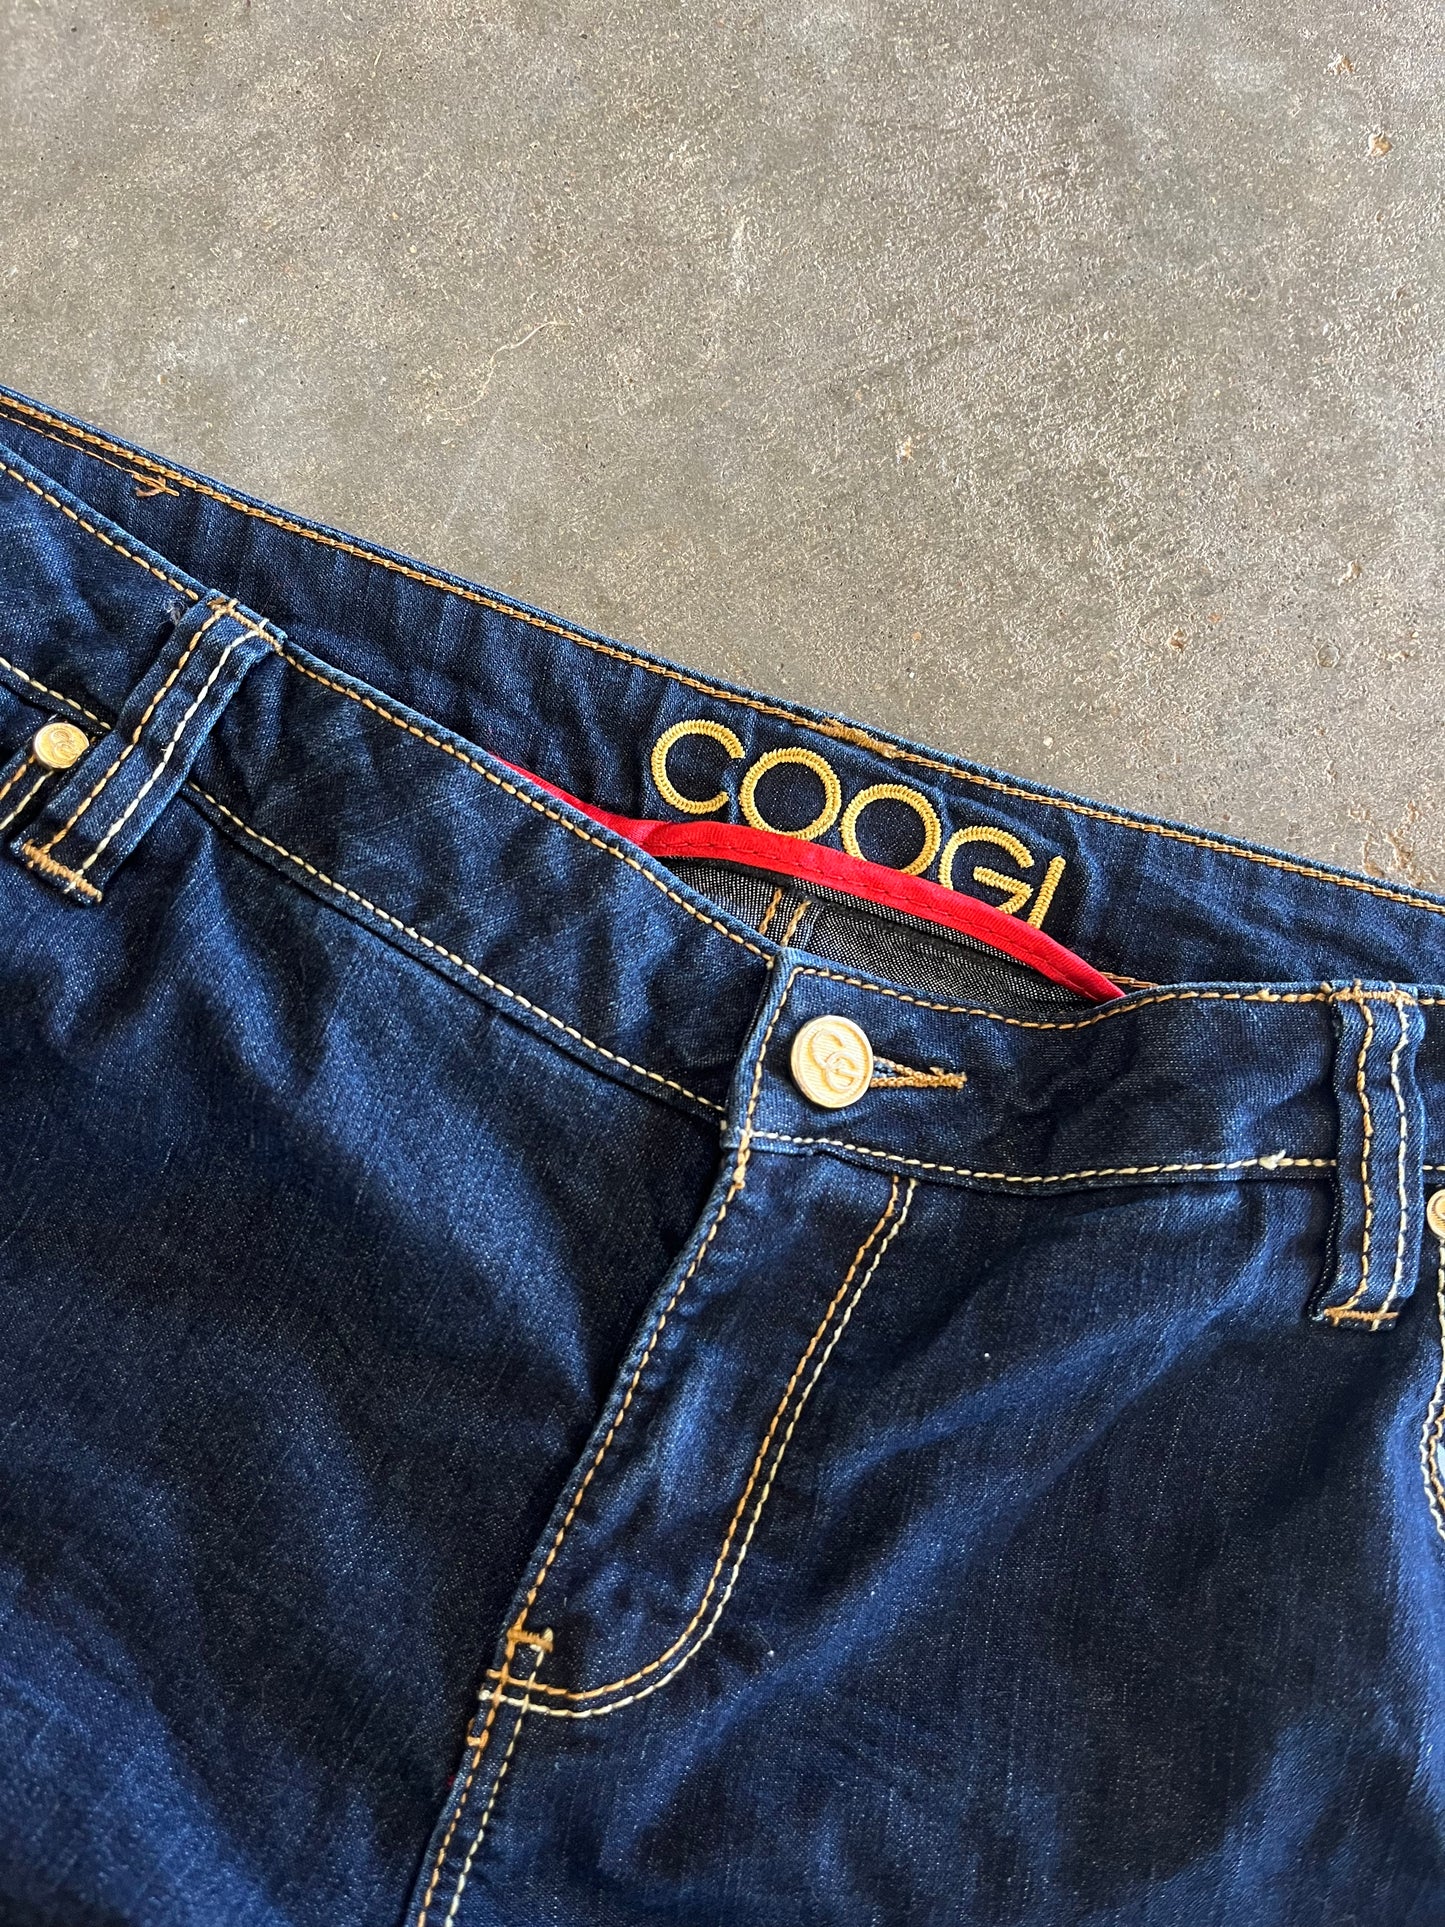 (17/18) Coogi Dark-Wash Denim Jeans